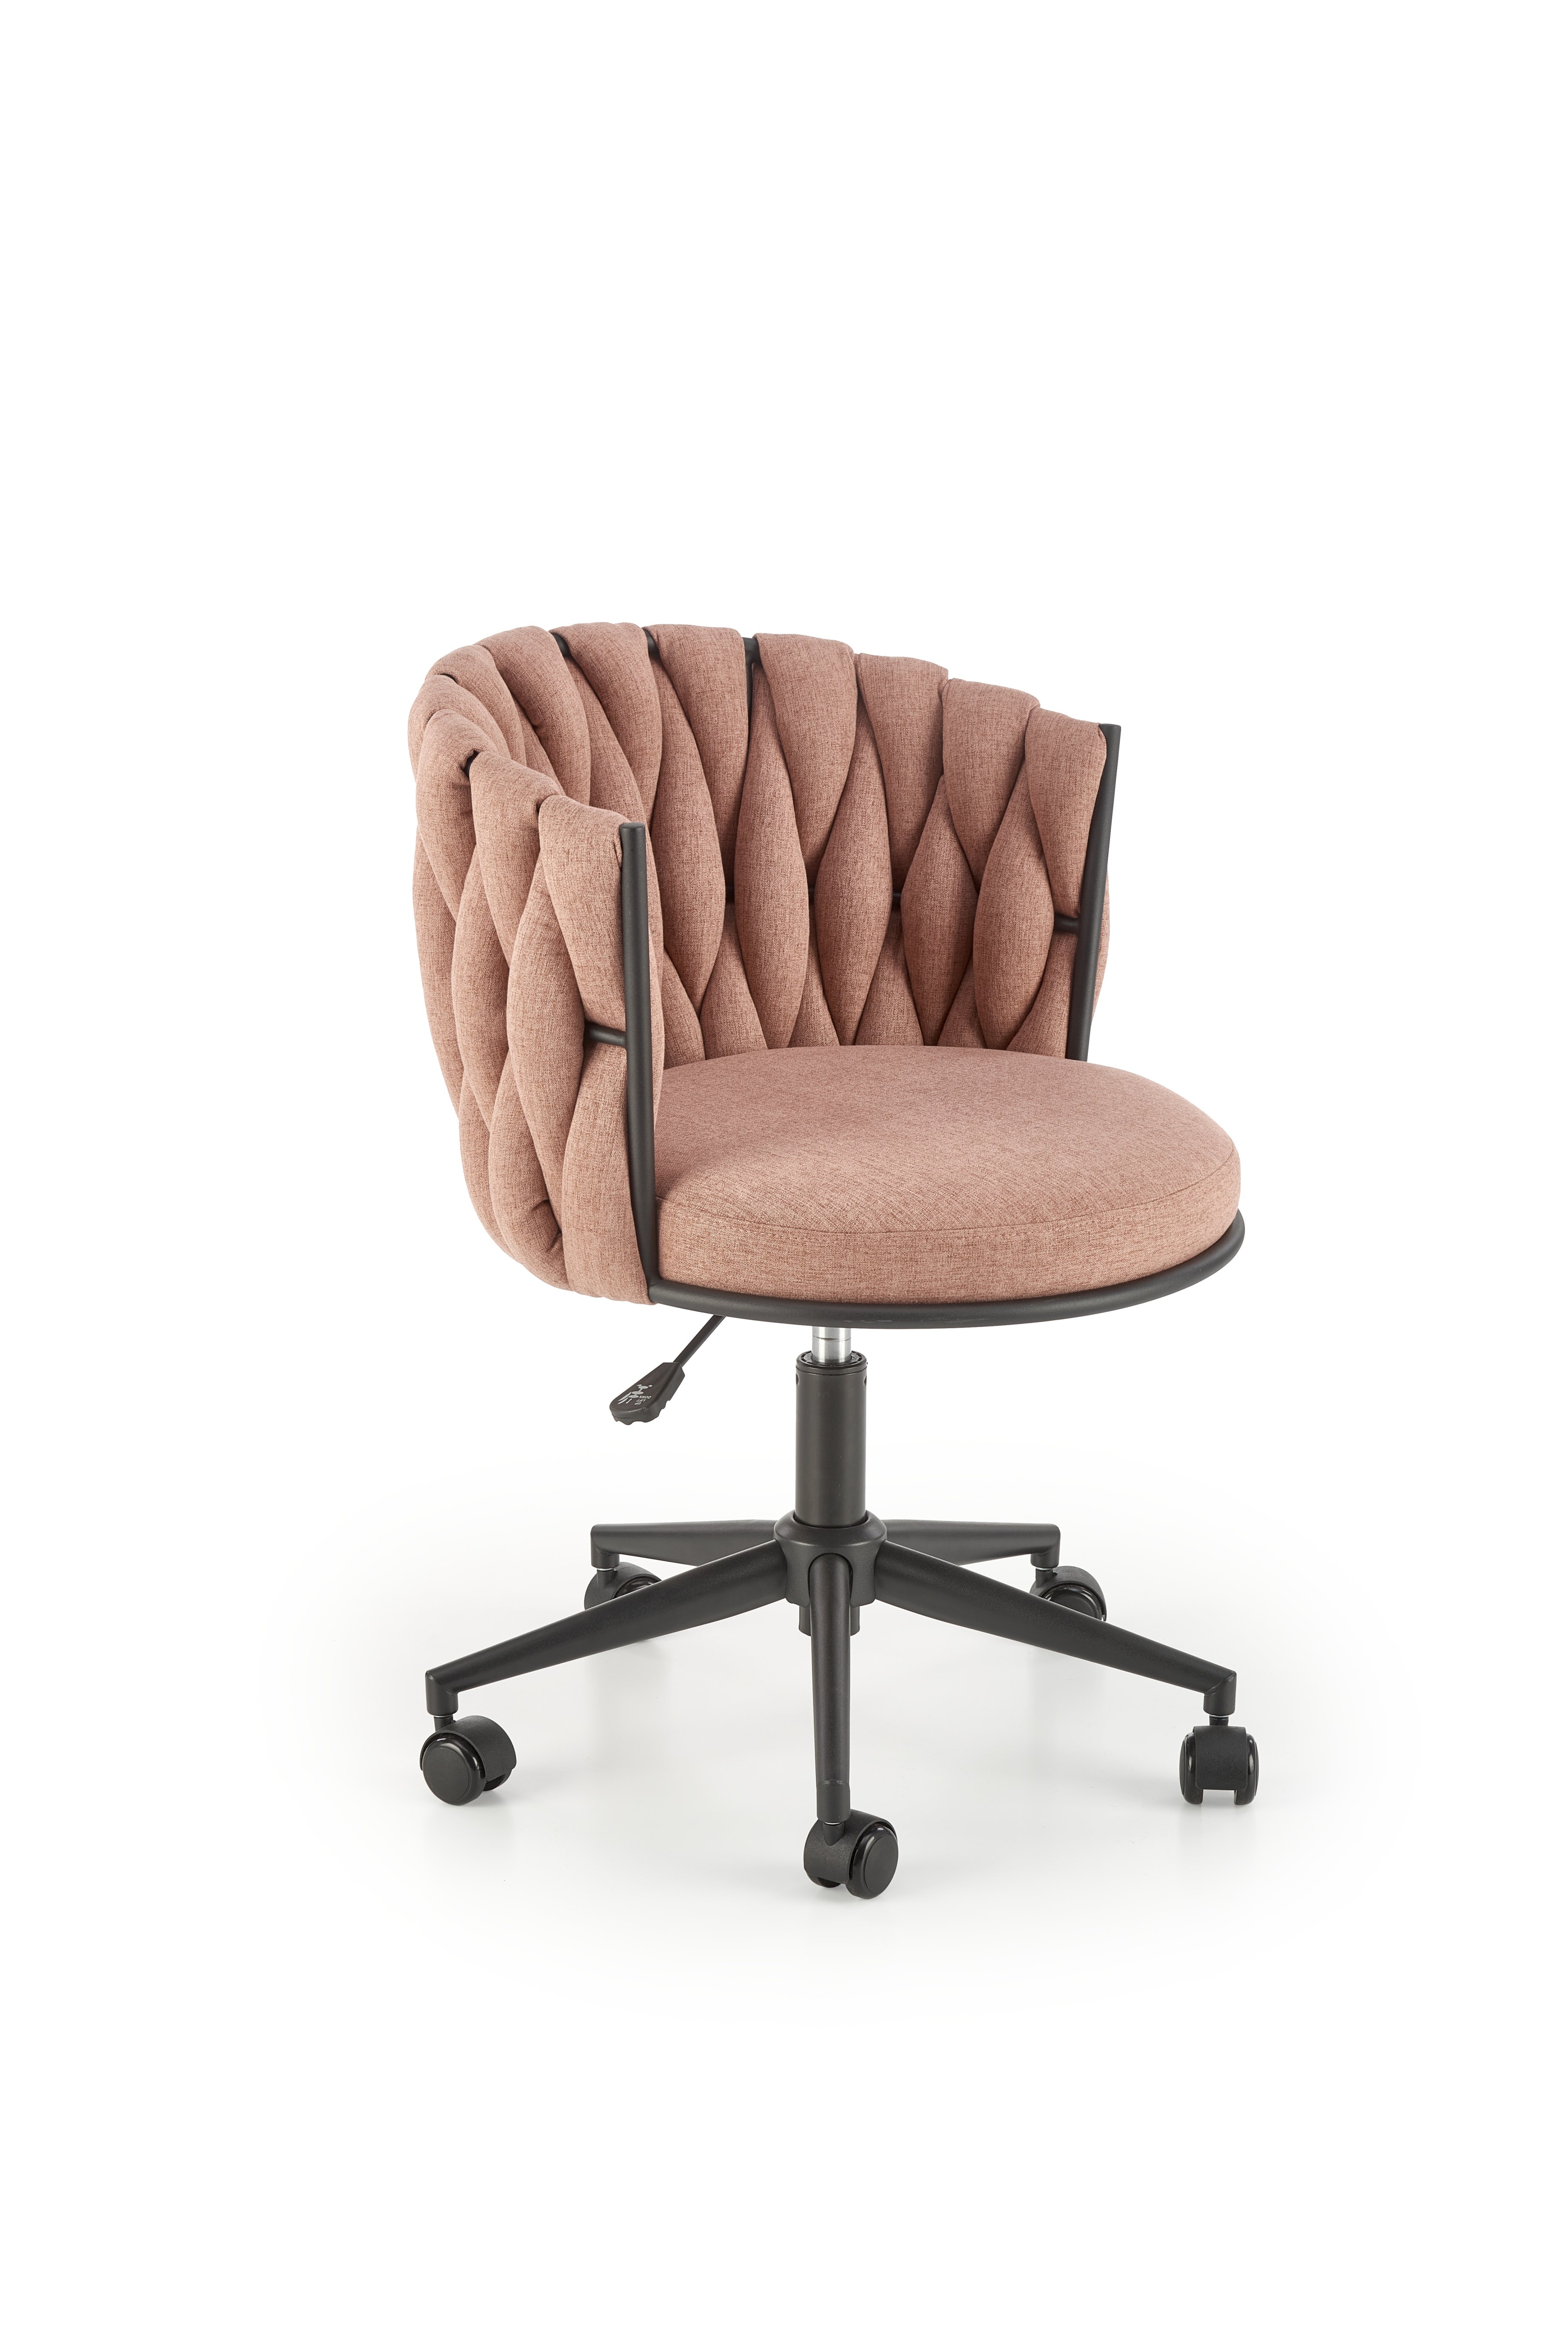 Fotel tapicerowany Talon - różowy talon fotel gabinetowy różowy